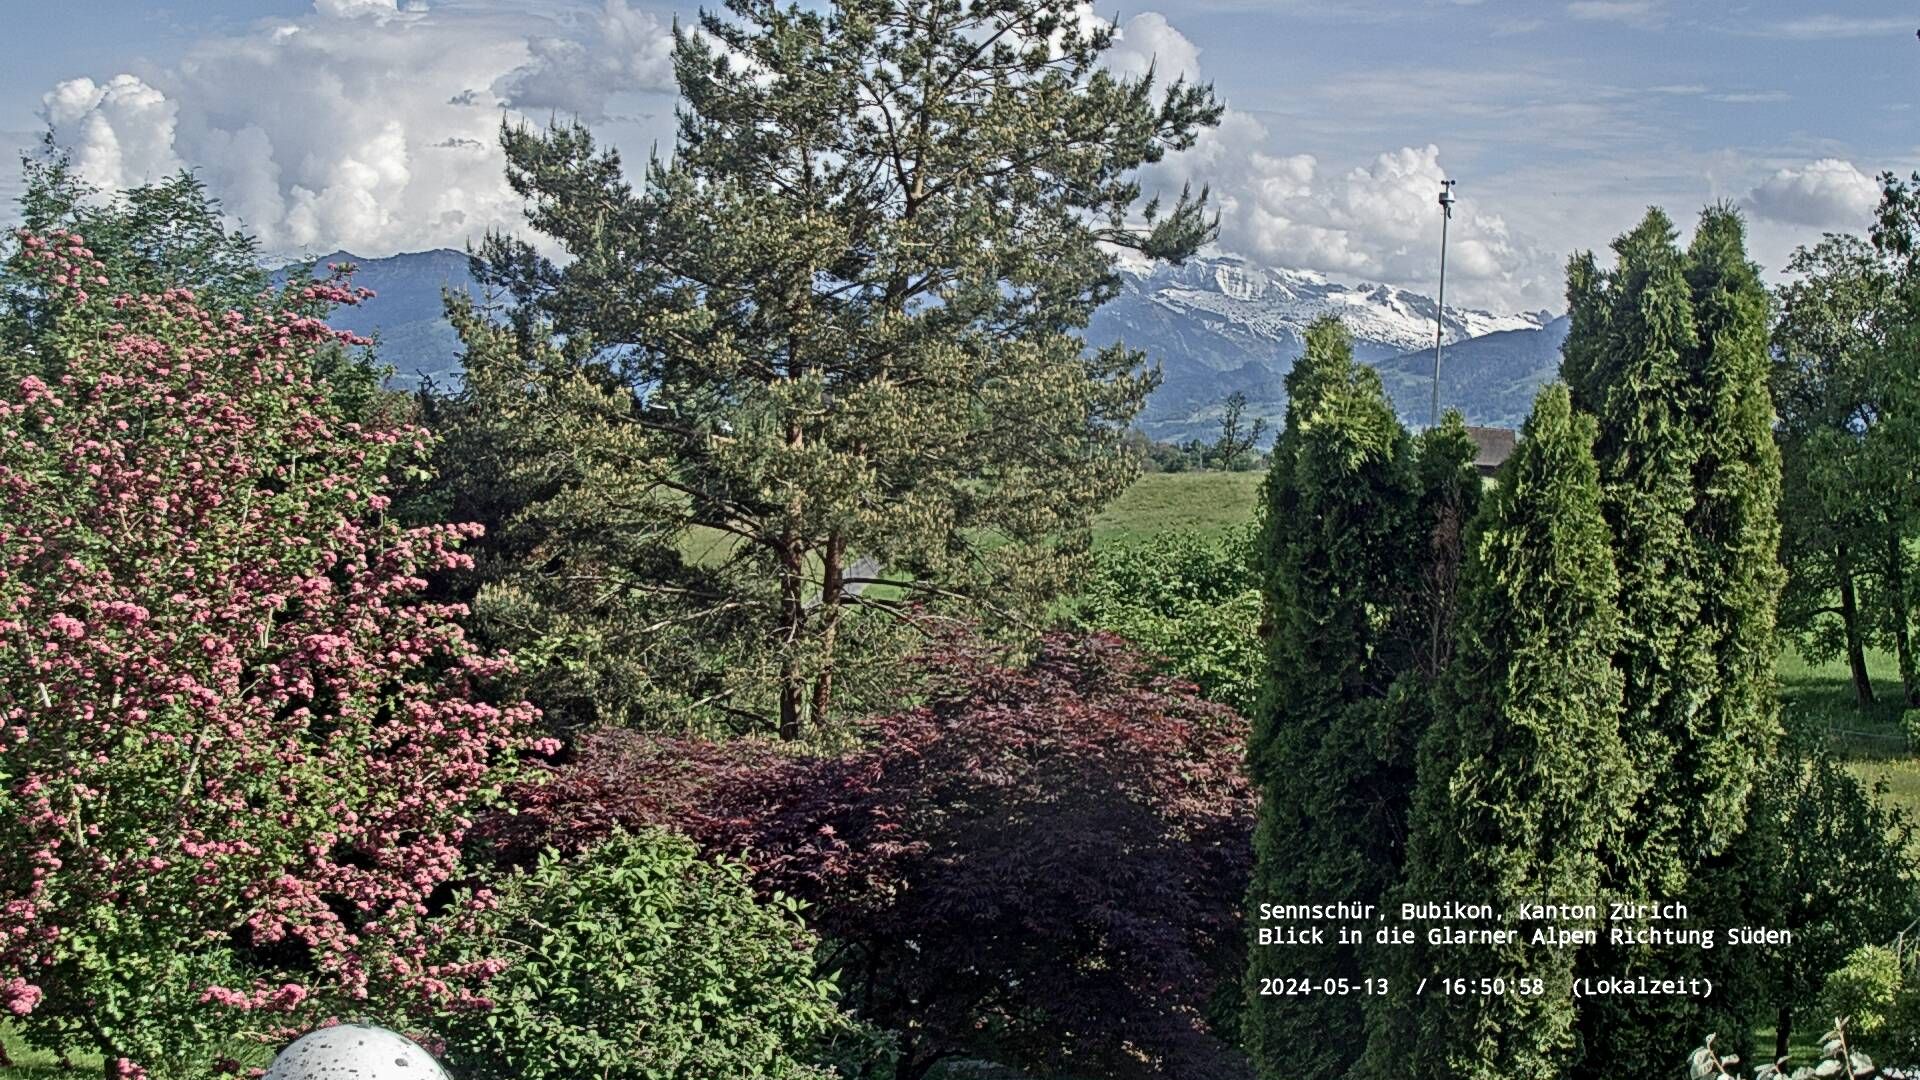 Bubikon › Süd: Glarus Alps